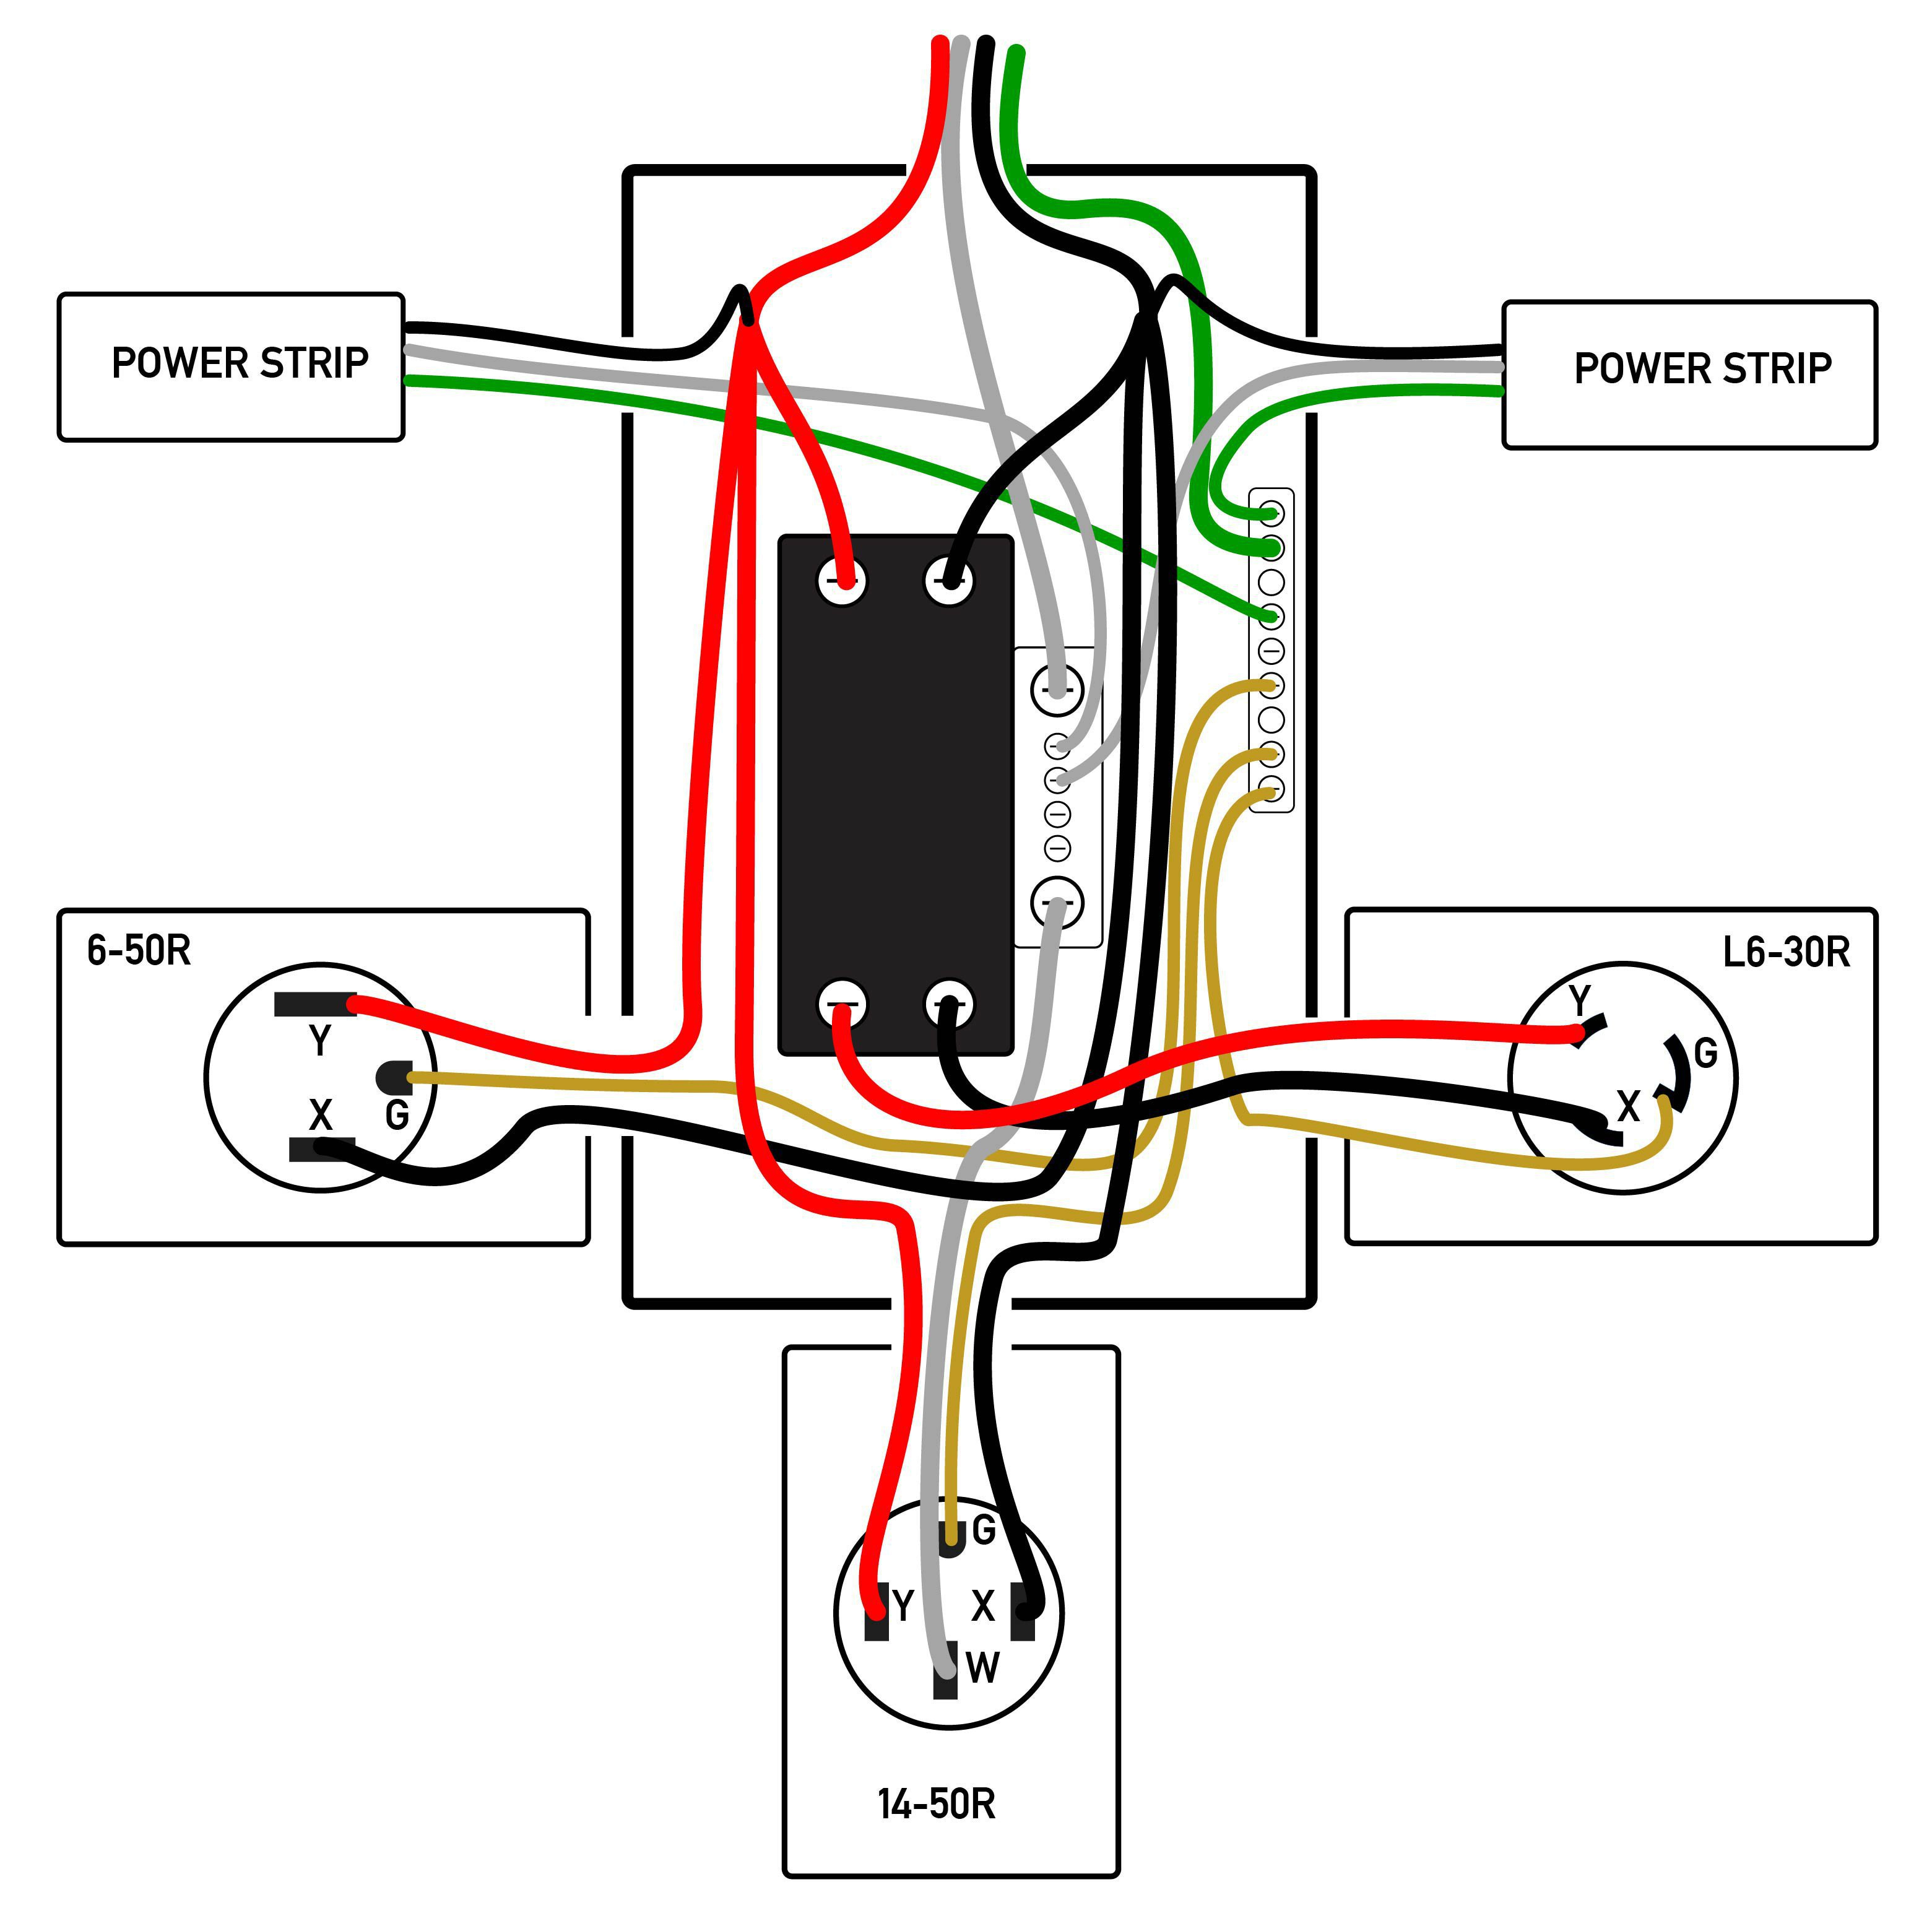 220V Welder Plug Wiring Diagram | Wiring Diagram - 220V Welder Plug Wiring Diagram